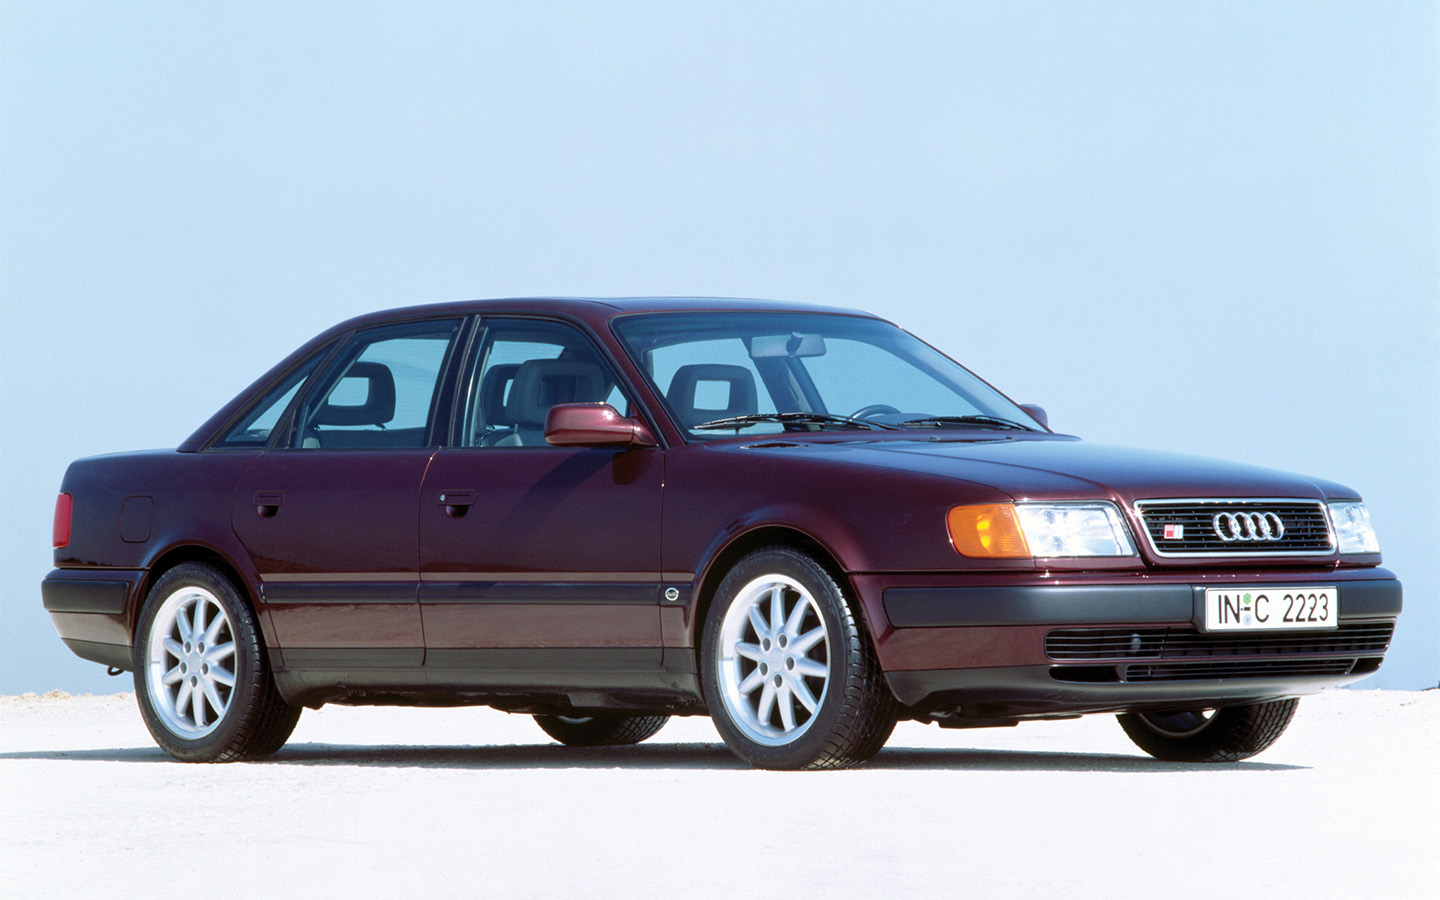 Изначально шильдик S4 носили самые быстрые версии Audi 100, которые впоследствии эволюционировали в семейство A6. Но до 1994 года мощные &laquo;сотки&raquo; назывались именно Audi S4 и Audi S4 Plus, причем обе версии различались довольно сильно. Первая имела пятицилиндровый мотор 2,2 мощностью 227 л. с., который в паре с пятиступенчатой МКП разгонял машину до 100 км/ч за 6,2 секунды. А вот S4 Plus оснащалась мотором V8 4,2, развивавшим 272 силы. С 1994 года обновленное семейство называется A6, а самые мощные версии &mdash; S6. Двигатели остаются теми же, но V8 достигает 286 л. с., а в версии S6 Plus уже 322 силы. Это означает разгон до &laquo;сотни&raquo; за 5,6 секунды. Все варианты были полноприводными с межосевым дифференциалом Torsen.